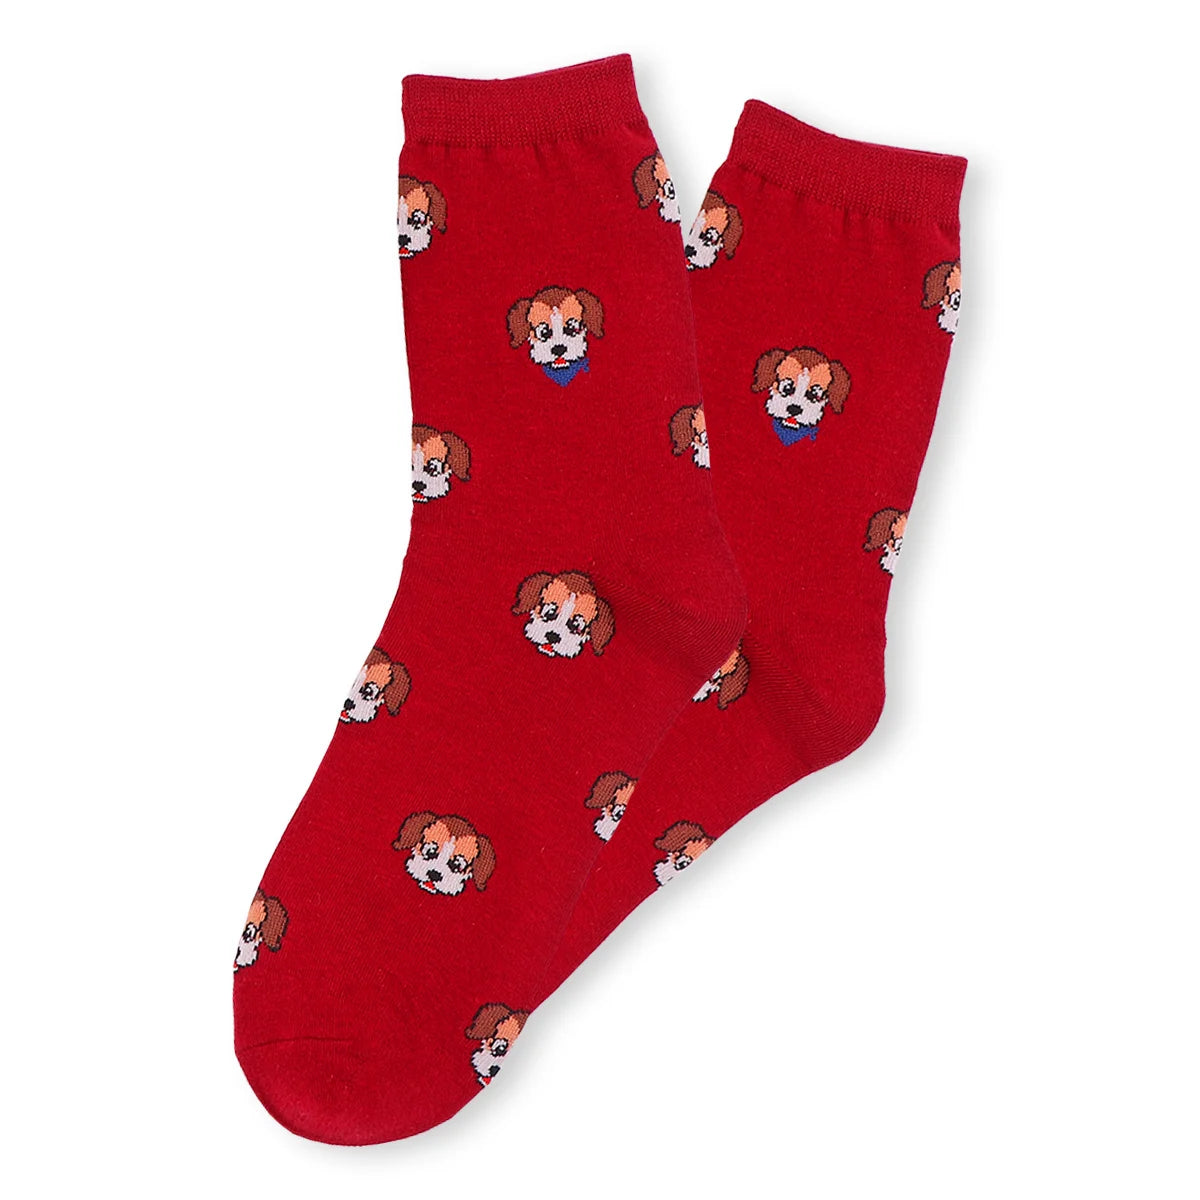 Chaussettes adultes en coton rouge avec des têtes de golden dessus | Chaussettes douces et respirantes | Un excellent choix pour les adultes qui aiment les dalmatiens |